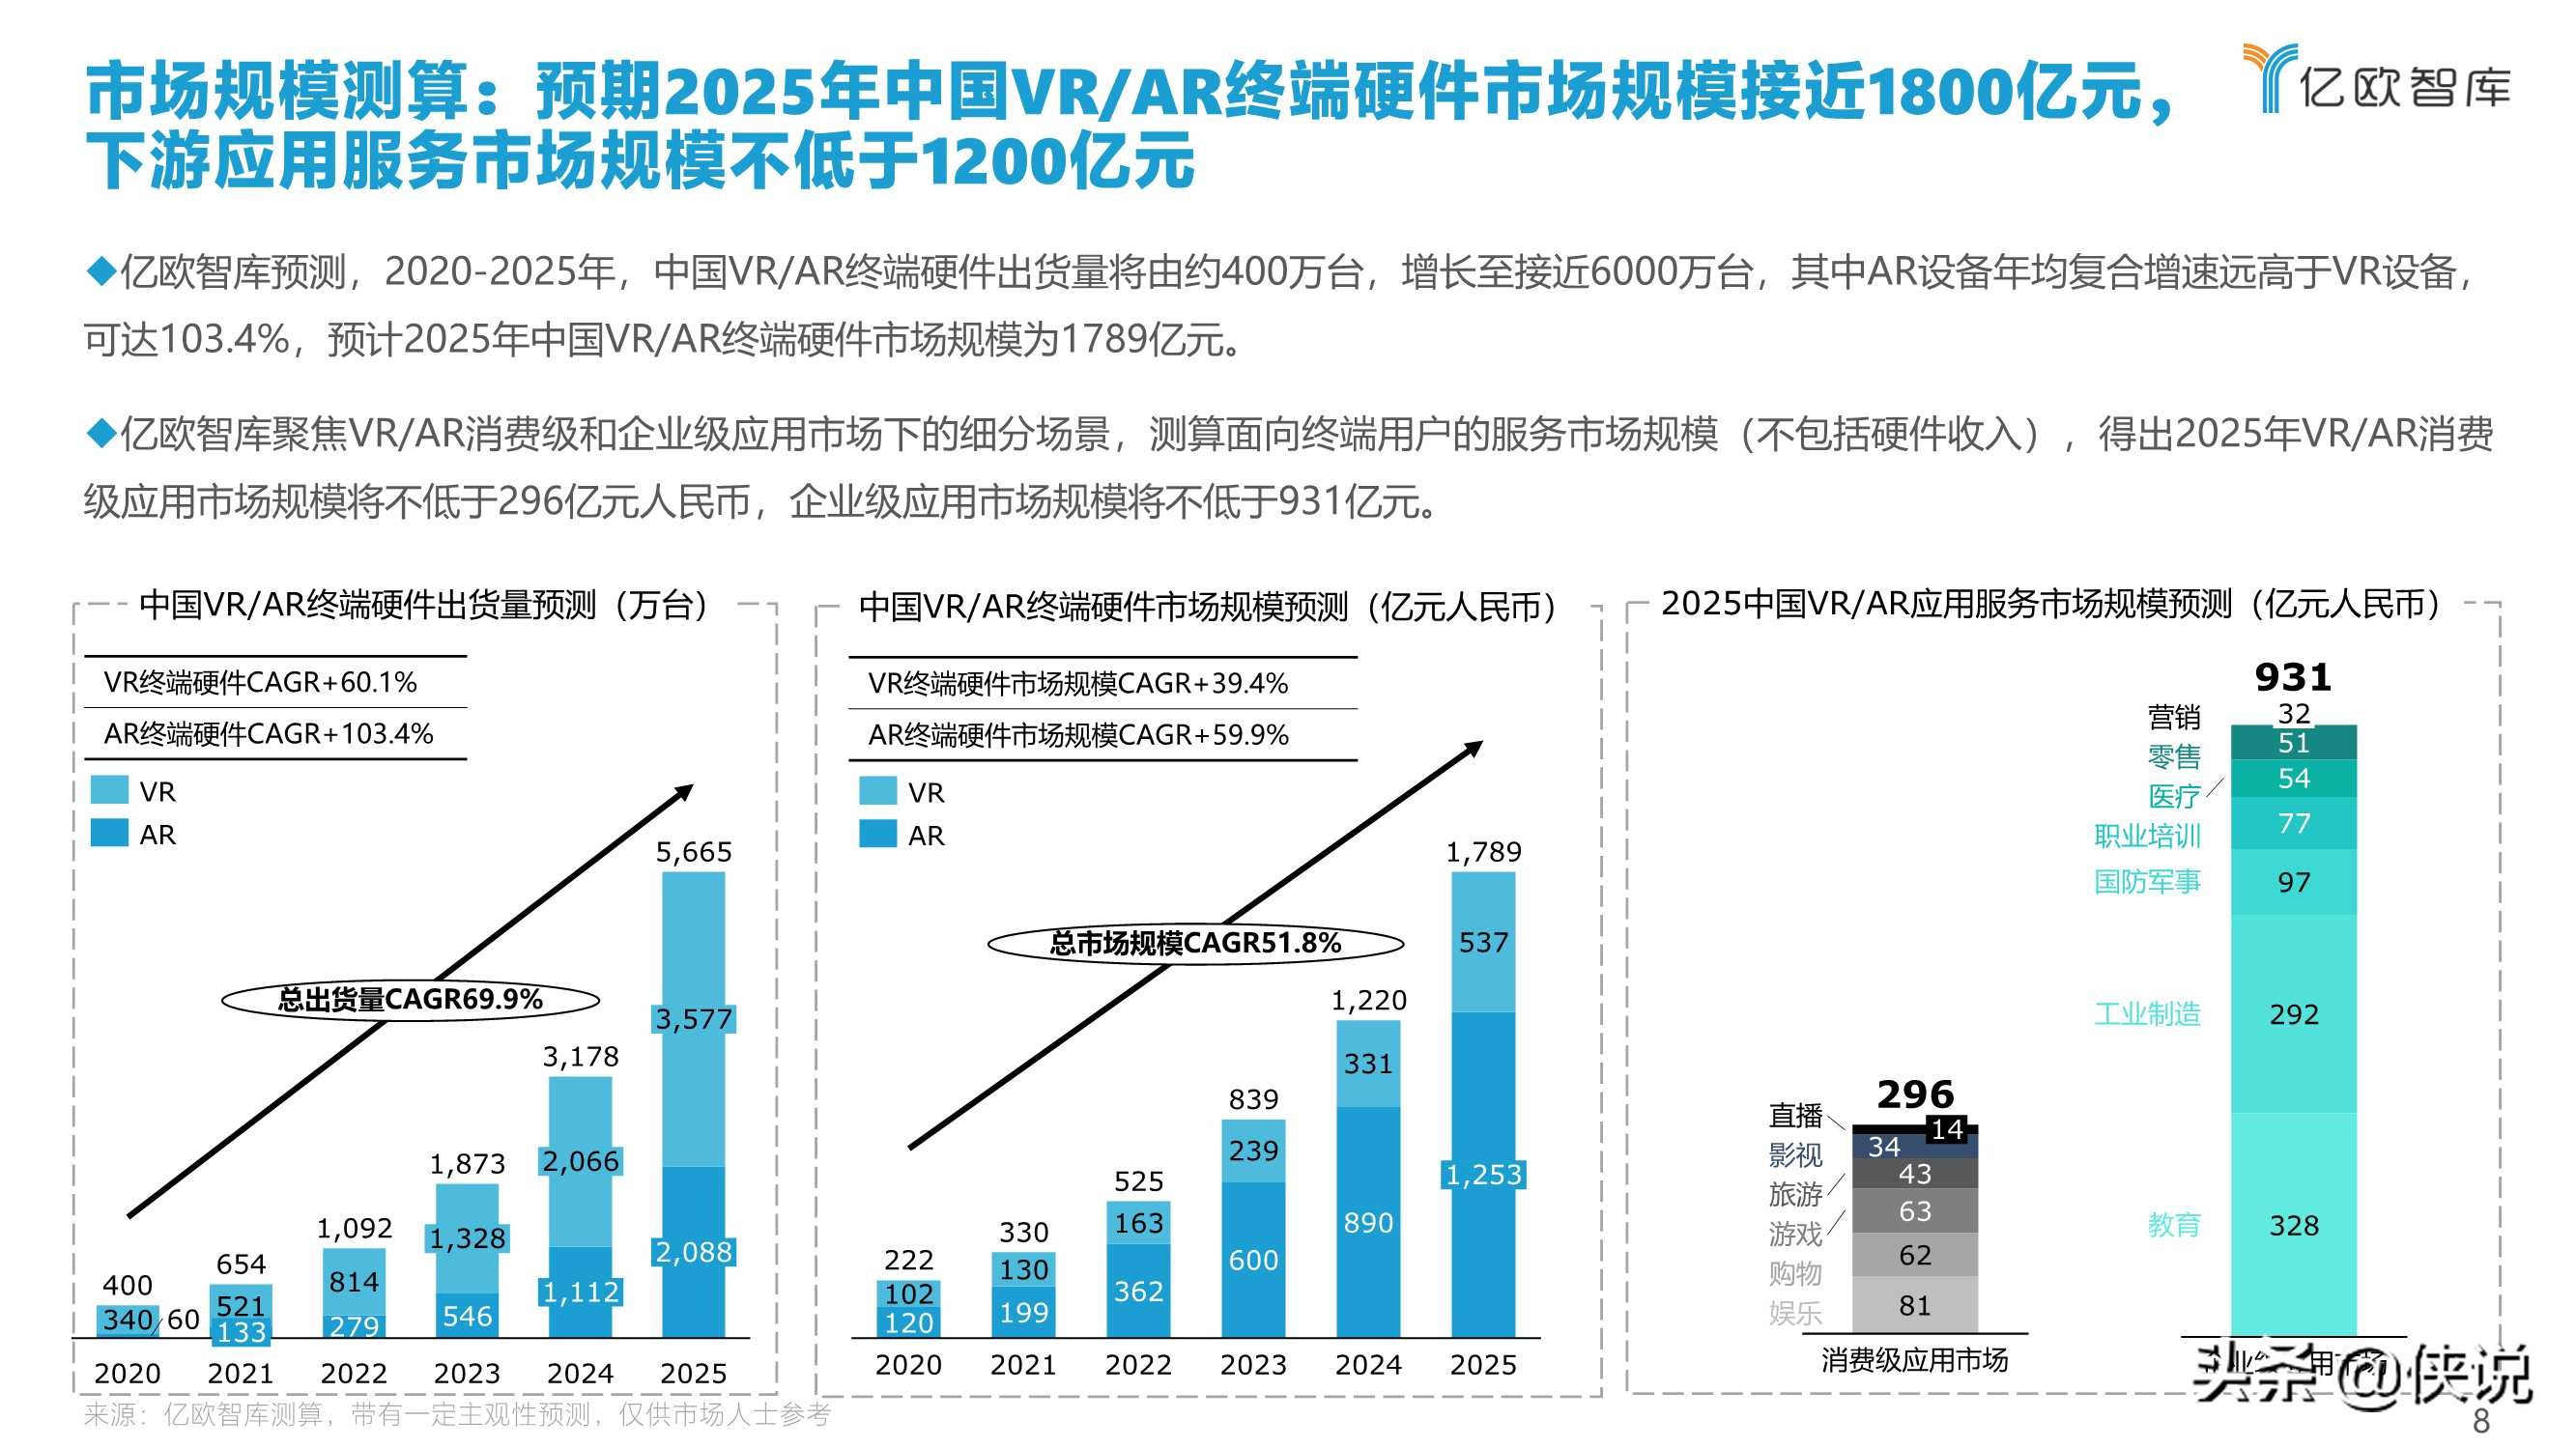 2021中国VRAR产业研究报告及中国创新50企业榜单（上）